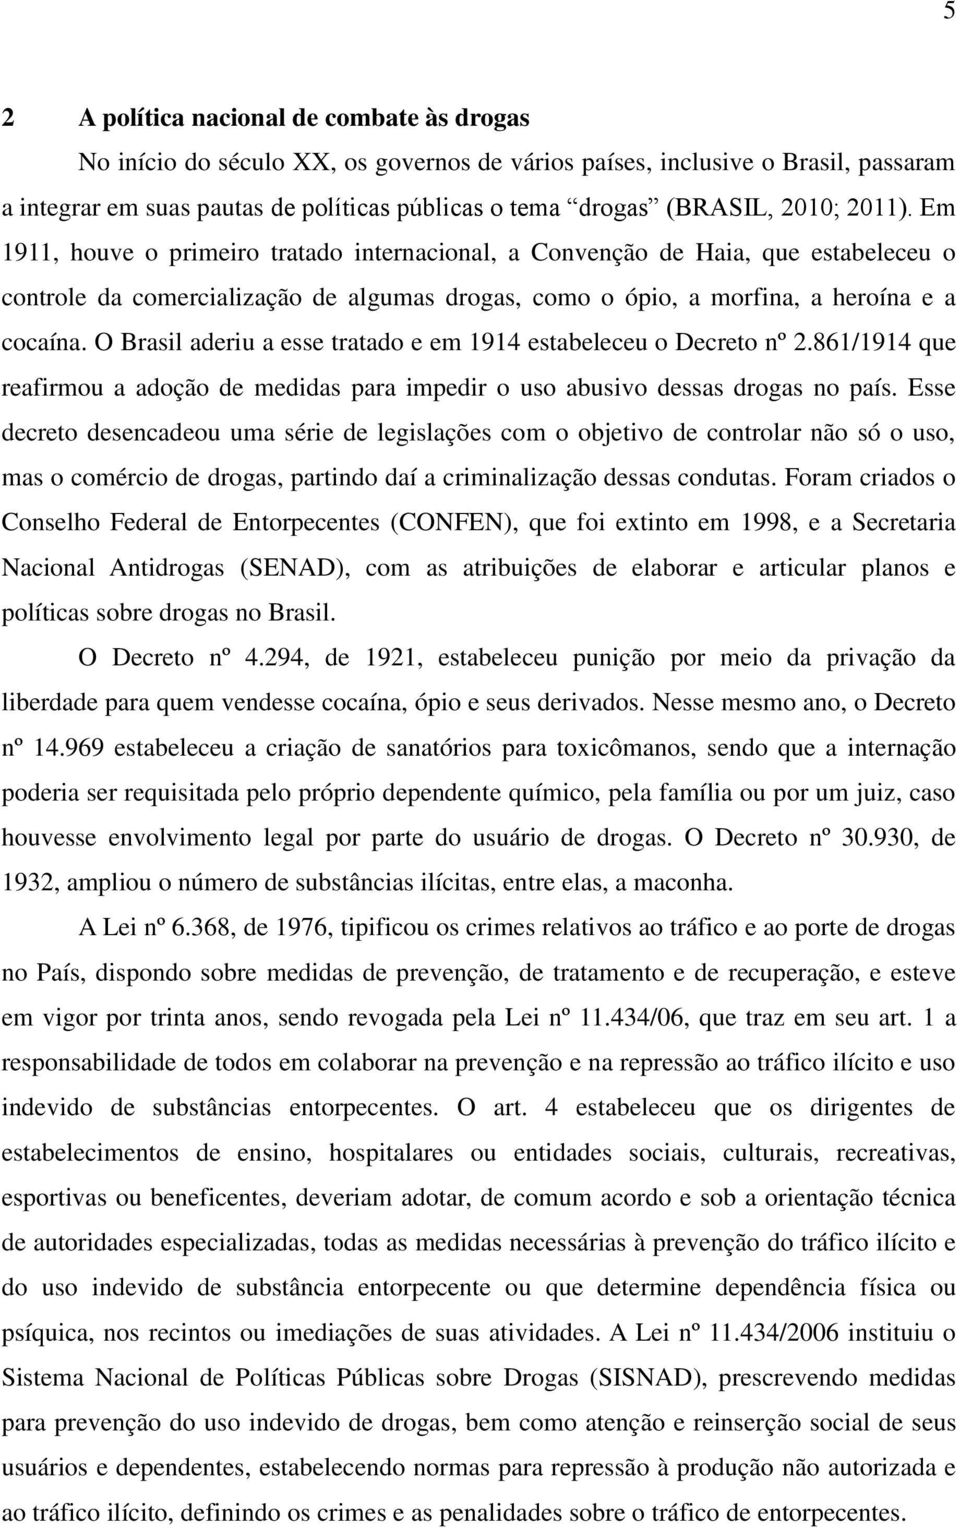 O Brasil aderiu a esse tratado e em 1914 estabeleceu o Decreto nº 2.861/1914 que reafirmou a adoção de medidas para impedir o uso abusivo dessas drogas no país.